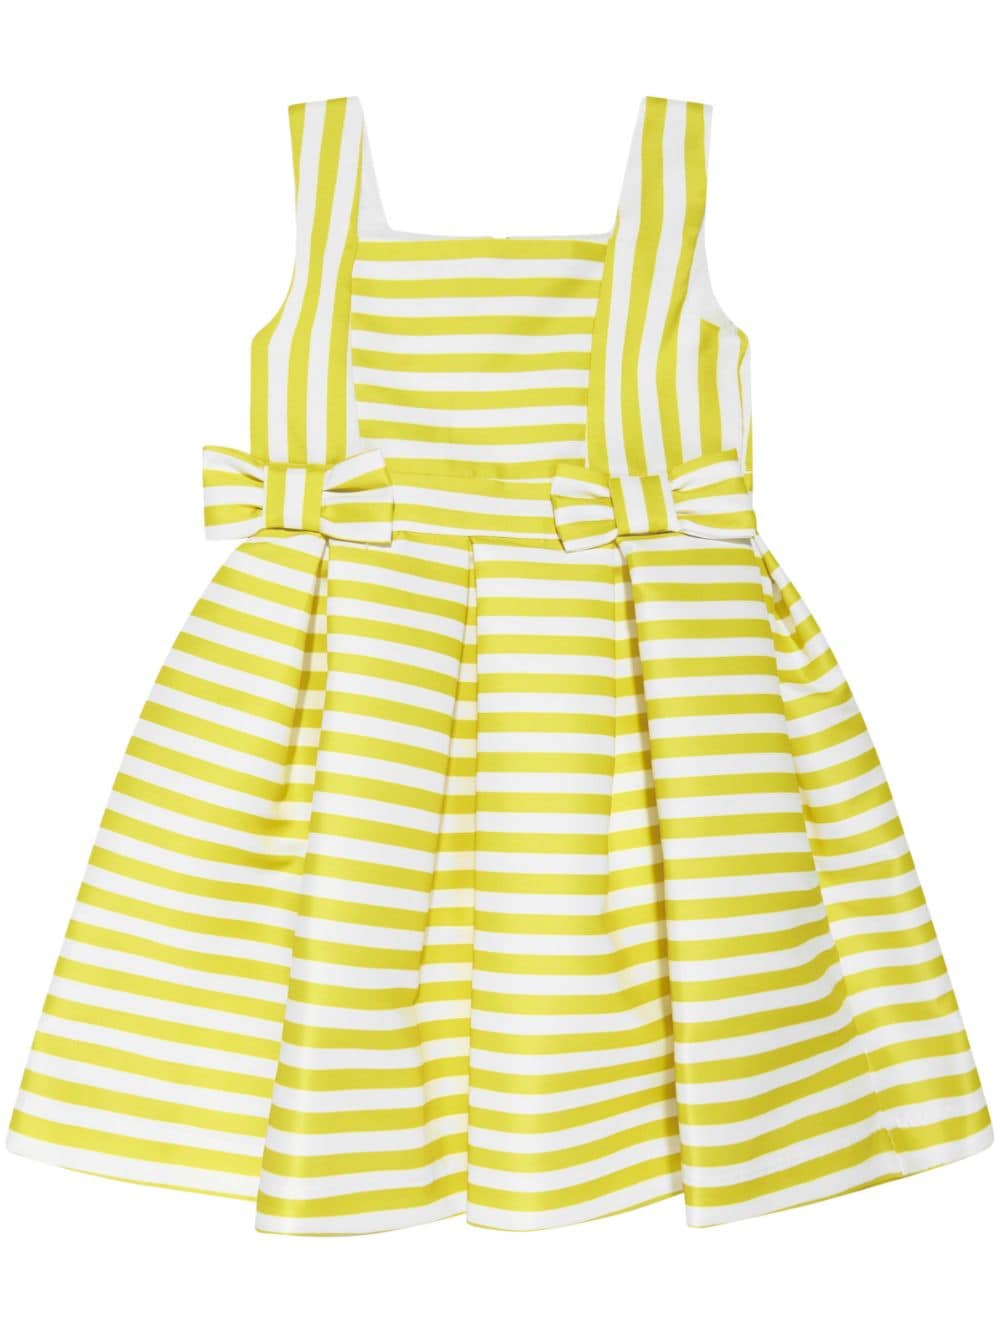 MAMA LUMA KIDS bow-detail striped sleeveless dress - Yellow